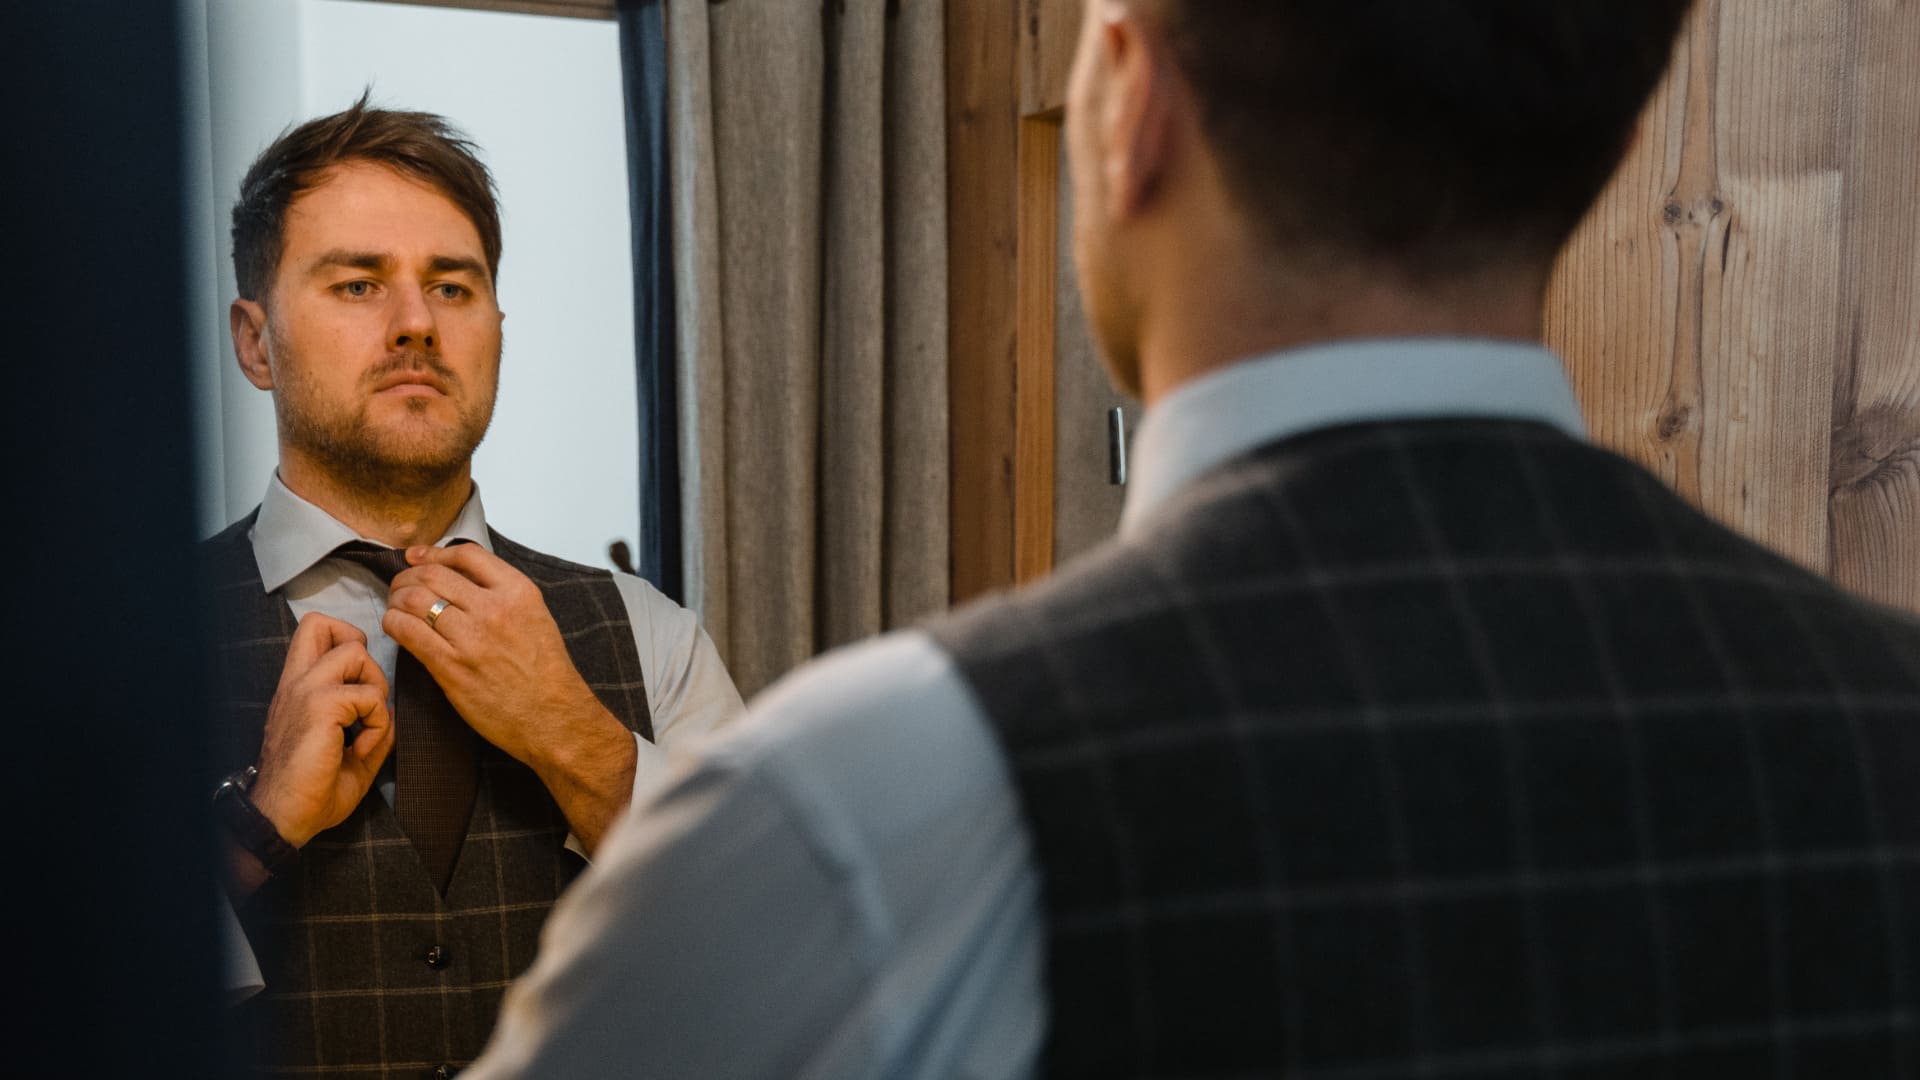 Homme devant un miroir en train de refaire son nœud de cravate